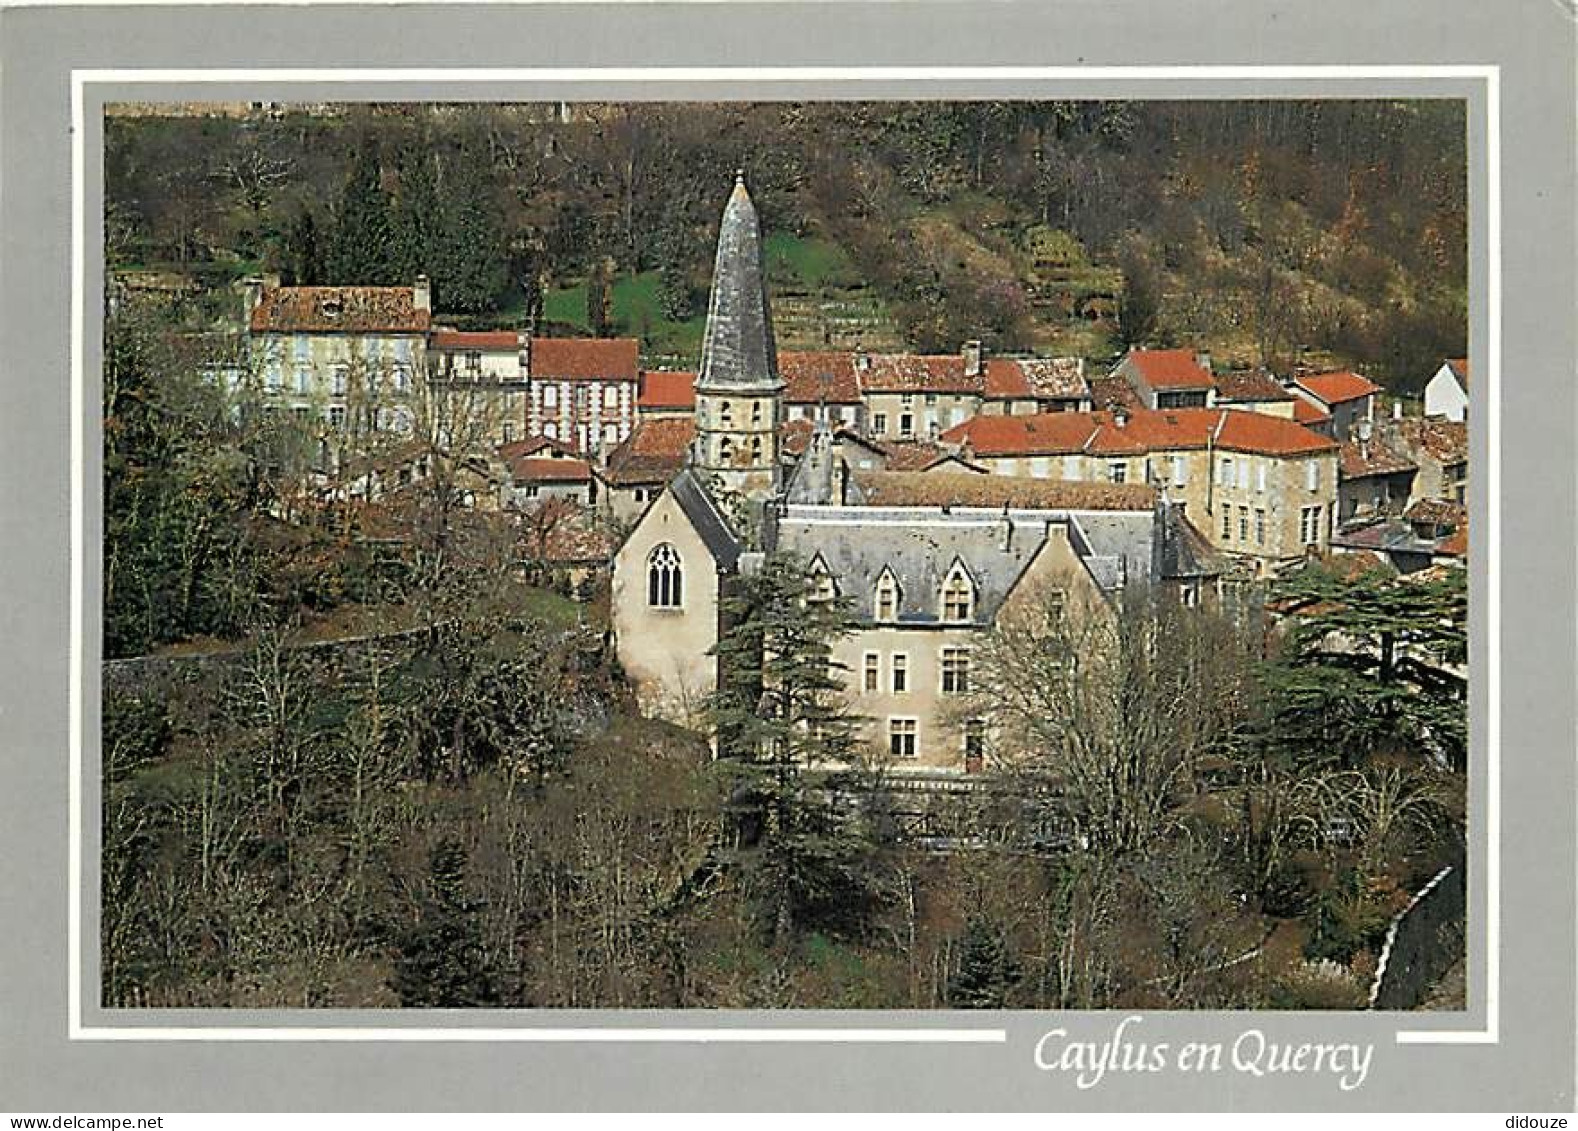 82 - Caylus - Le Château Et Le Clocher De L'Eglise Saint Jean Baptiste - Flamme Postale De Caylus - CPM - Voir Scans Rec - Caylus